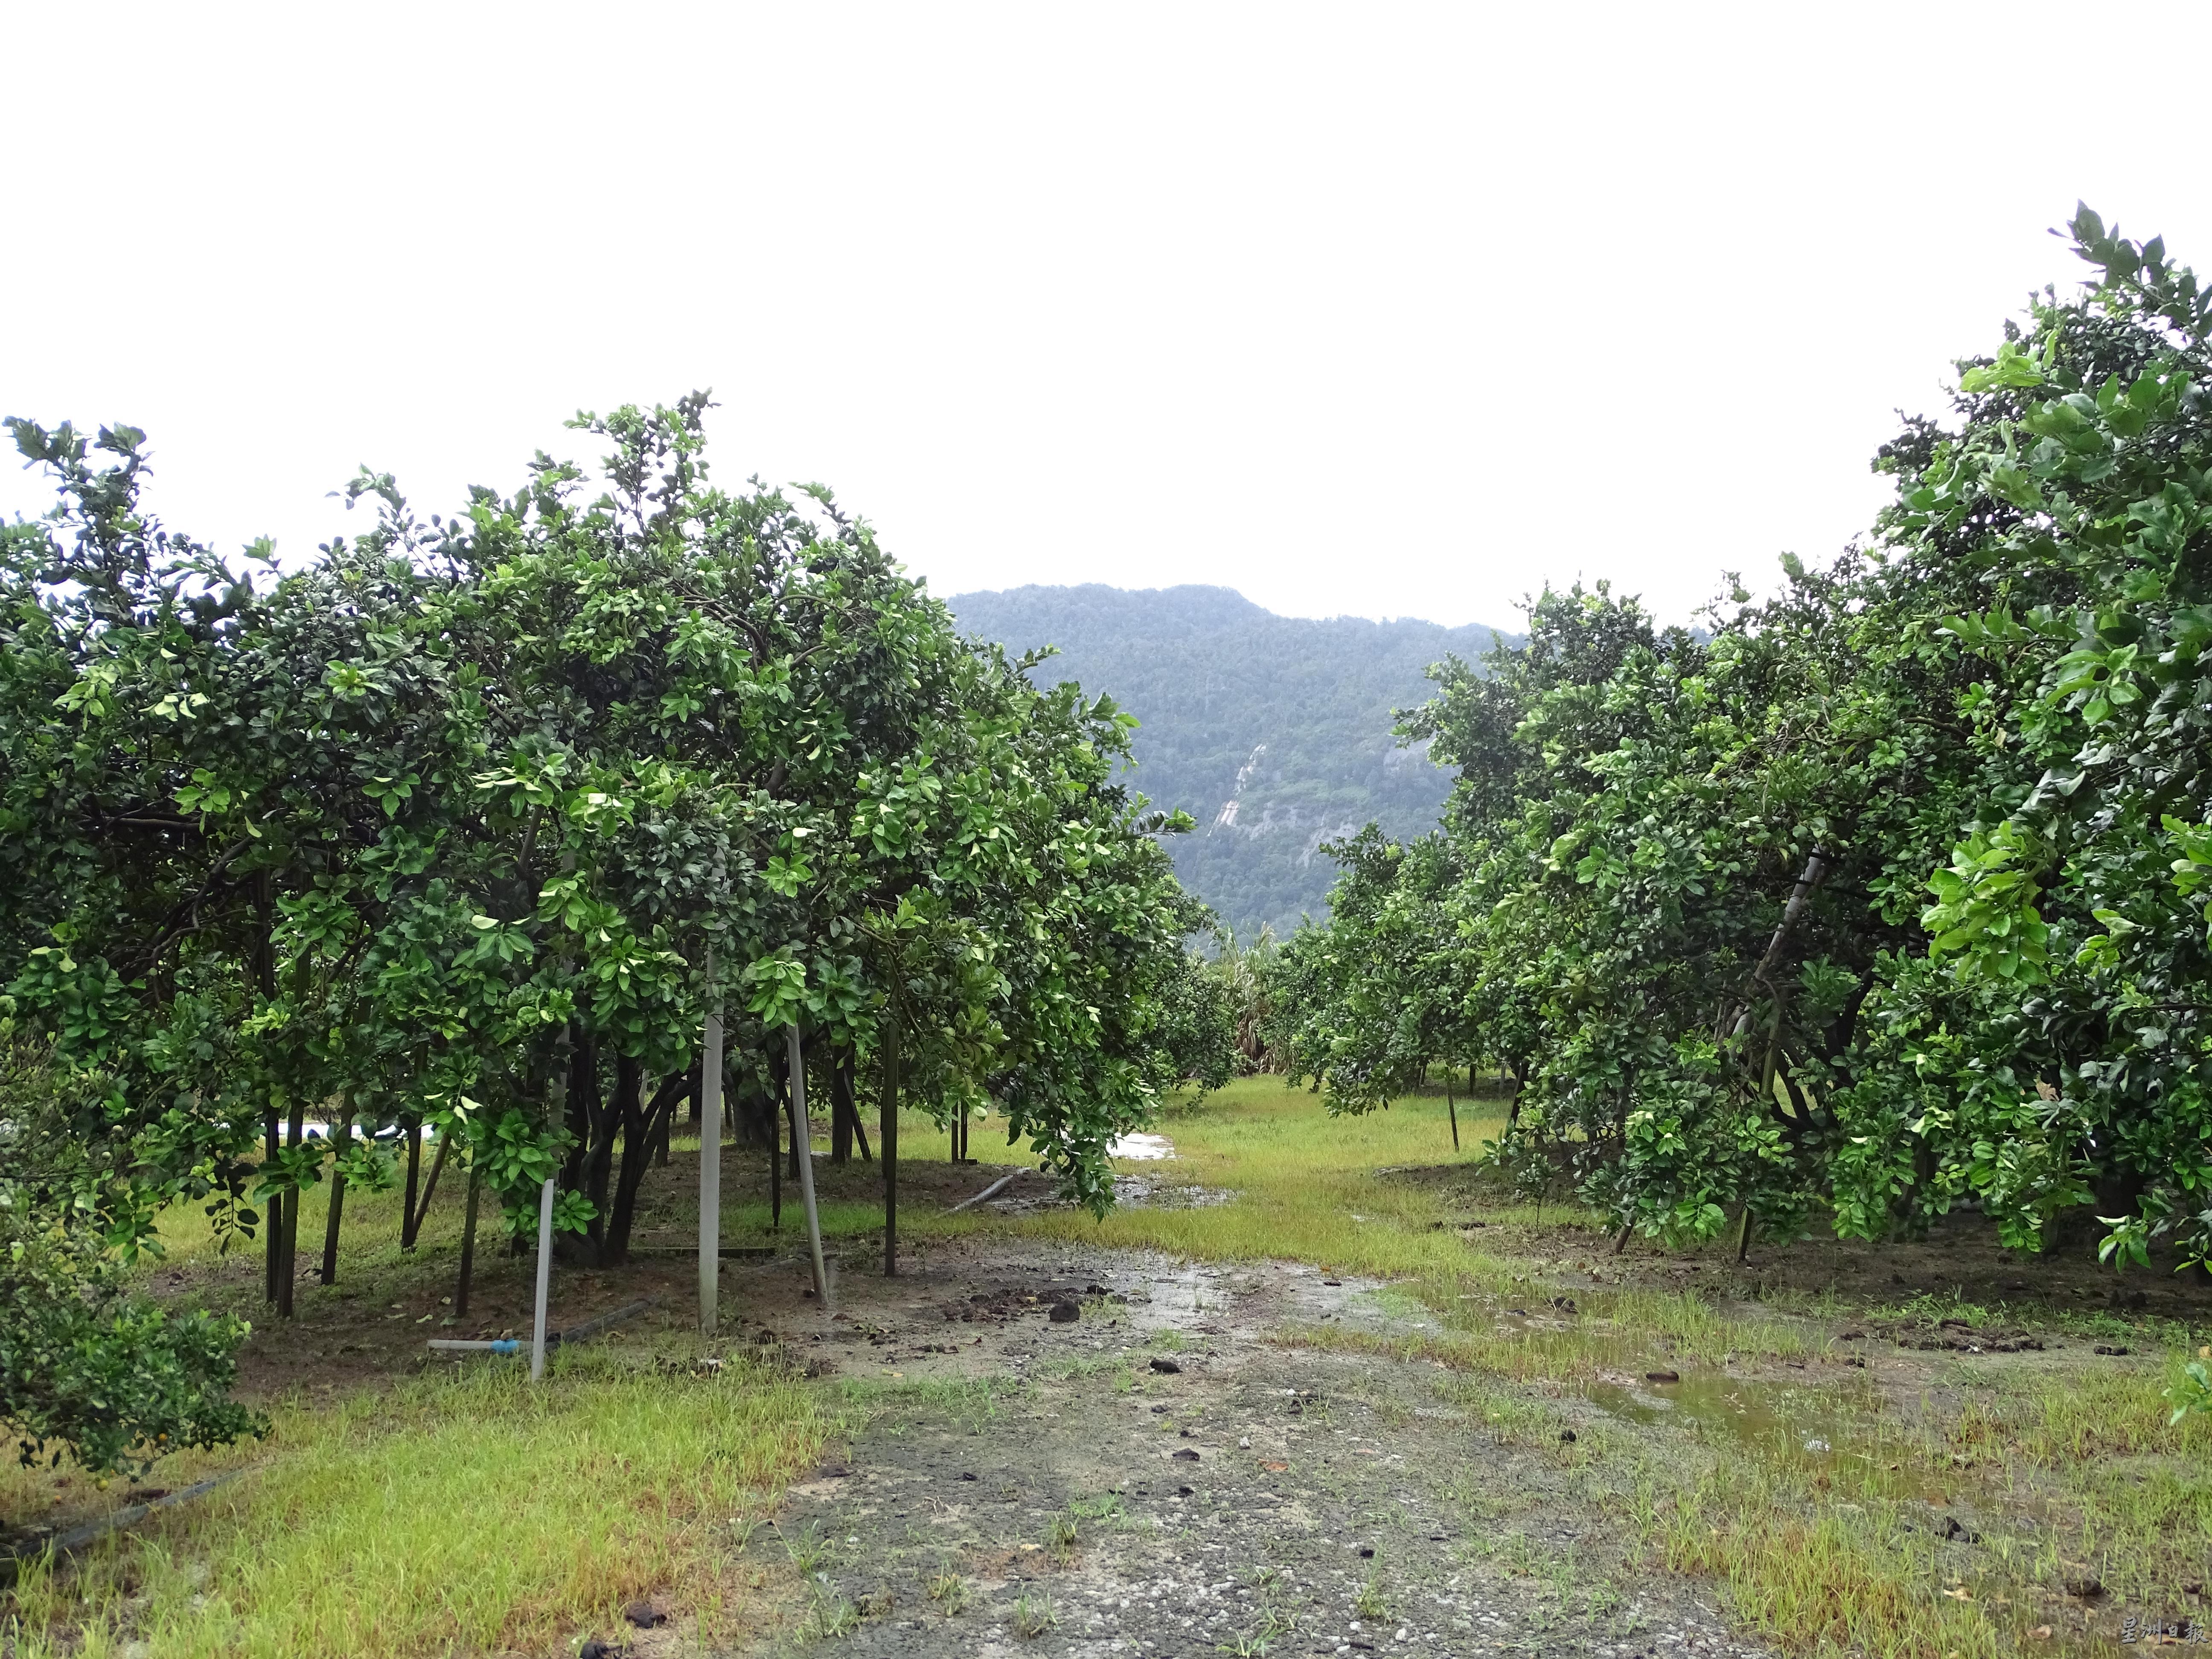 走入石山脚的柚子园，仿佛进入了世外桃源，除了众多的柚子树之外，还能看见群山环绕。

